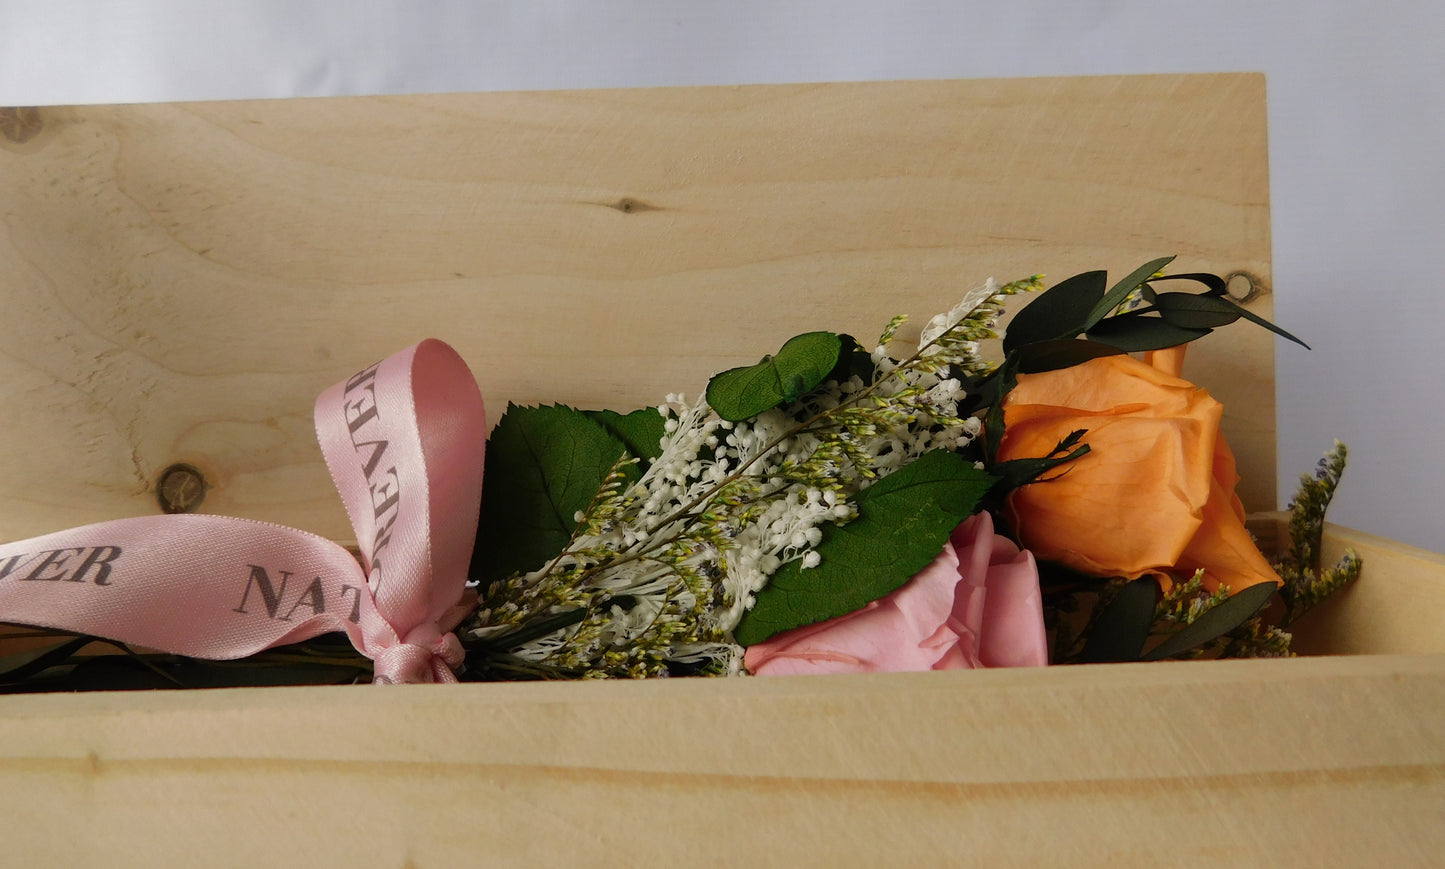 Caja Madera + Bouquet De Flores